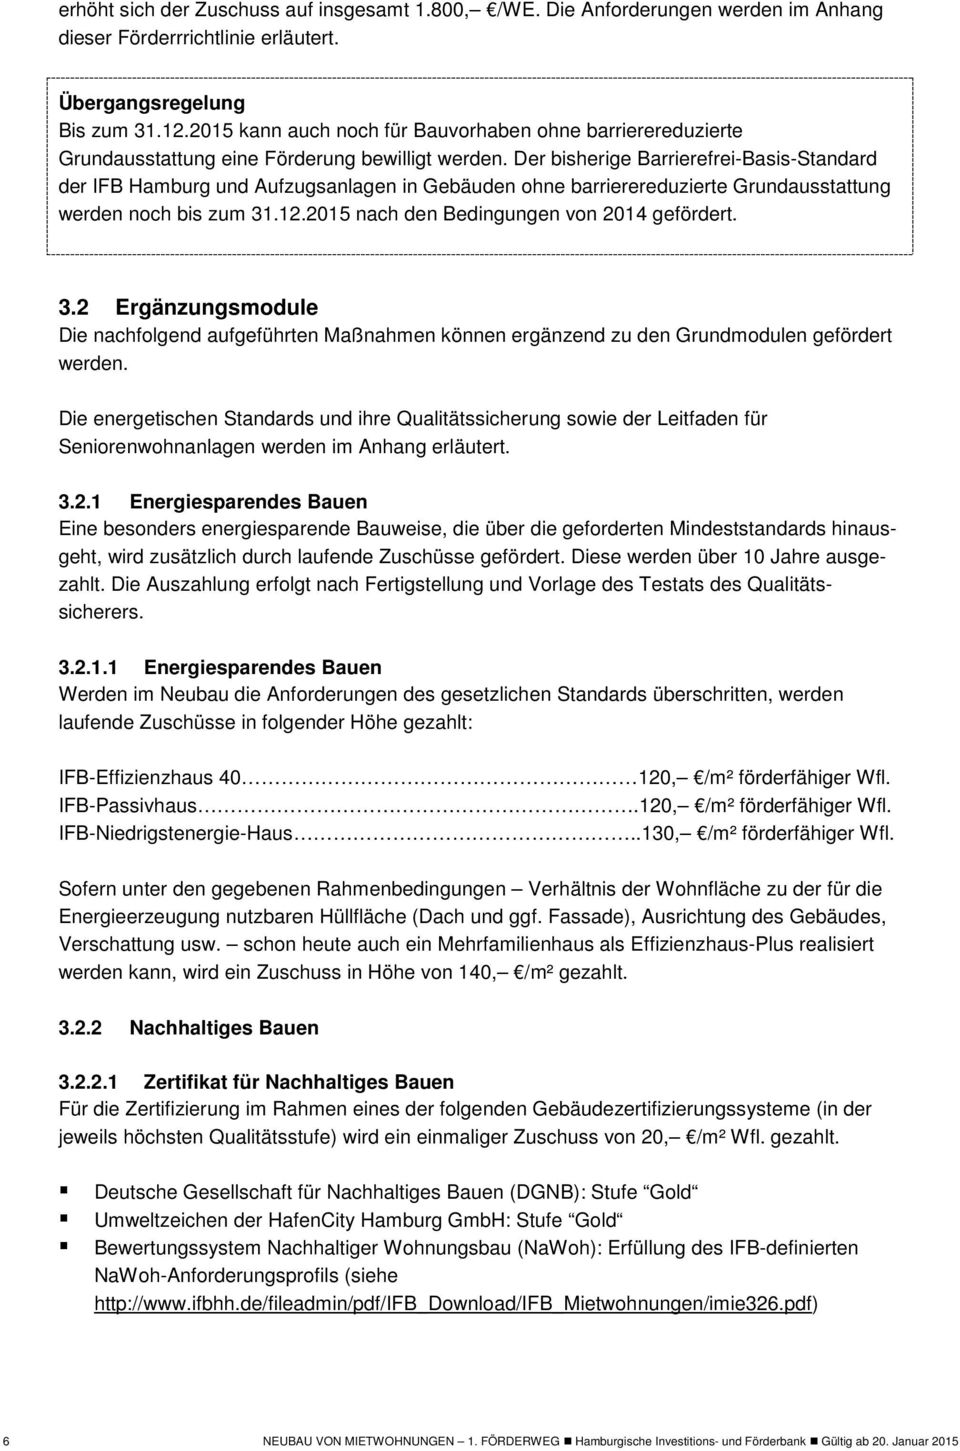 Der bisherige Barrierefrei-Basis-Standard der IFB Hamburg und Aufzugsanlagen in Gebäuden ohne barrierereduzierte Grundausstattung werden noch bis zum 31.12.